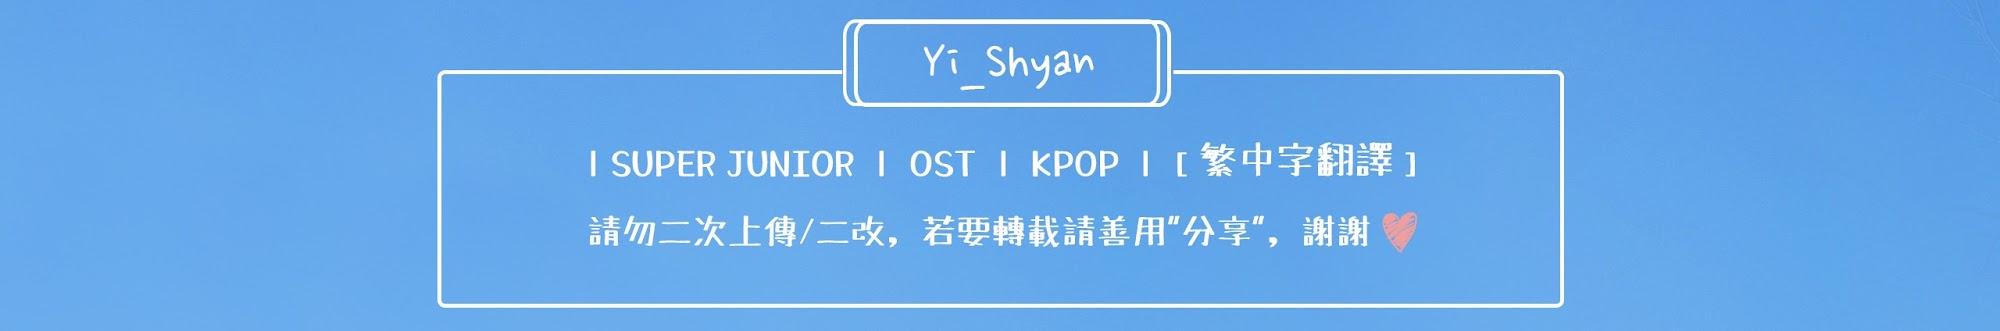 Yi_Shyan